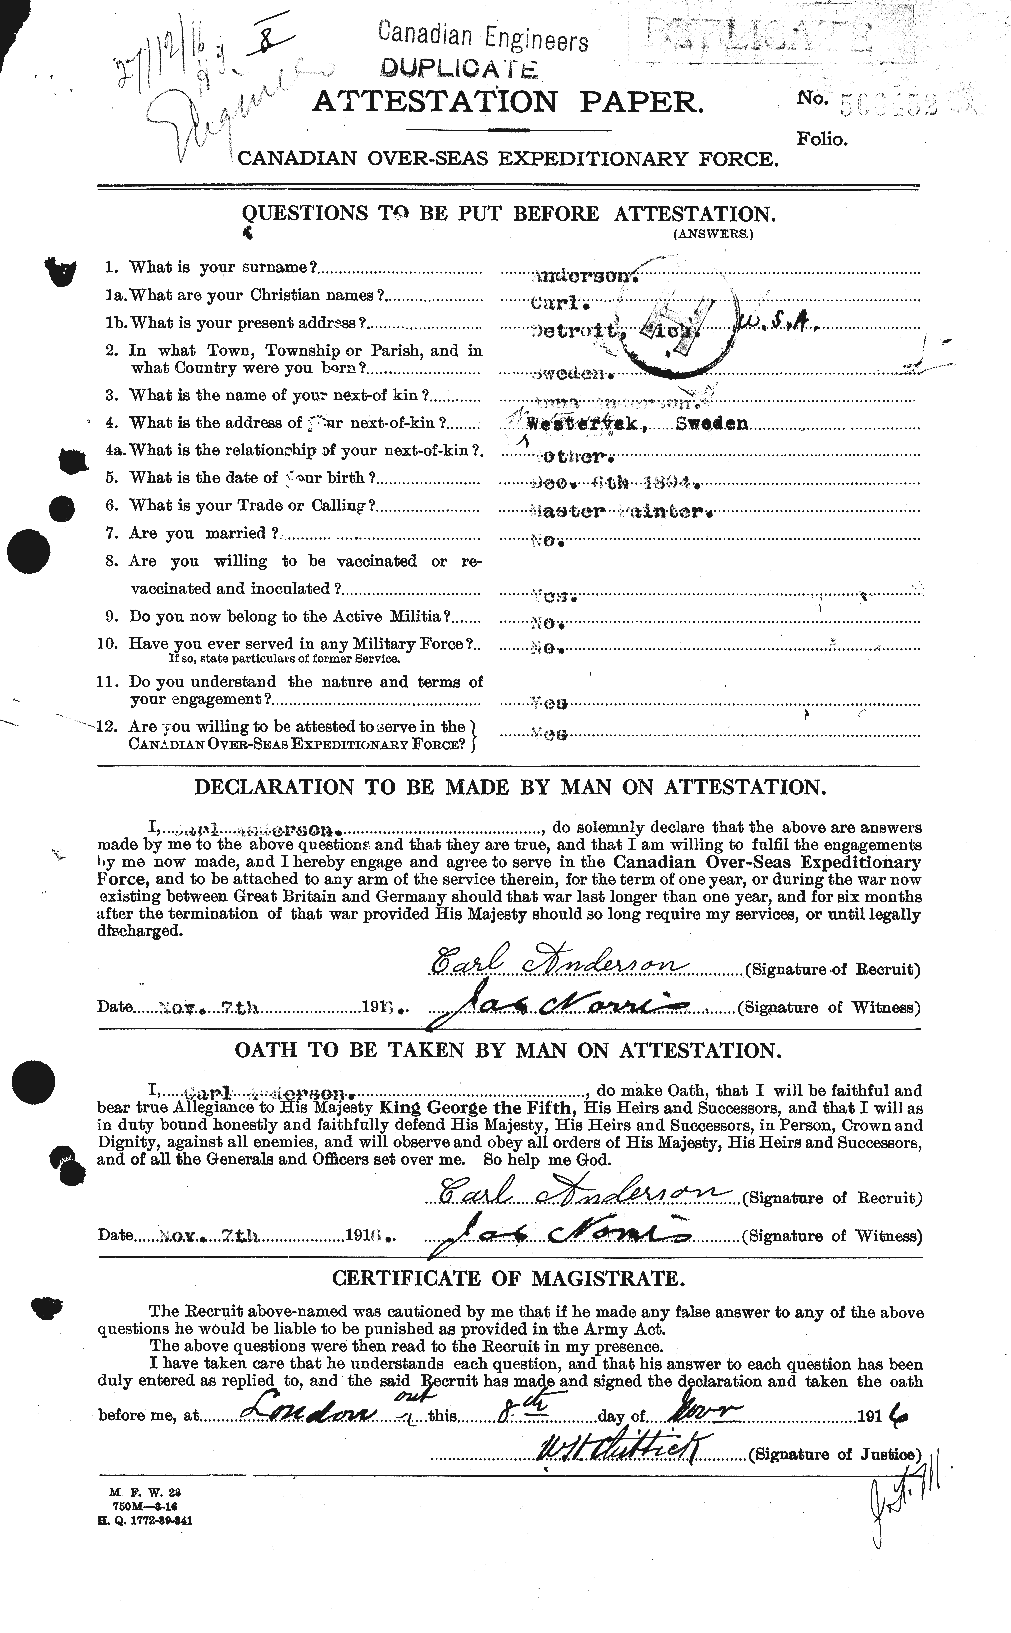 Dossiers du Personnel de la Première Guerre mondiale - CEC 209295a